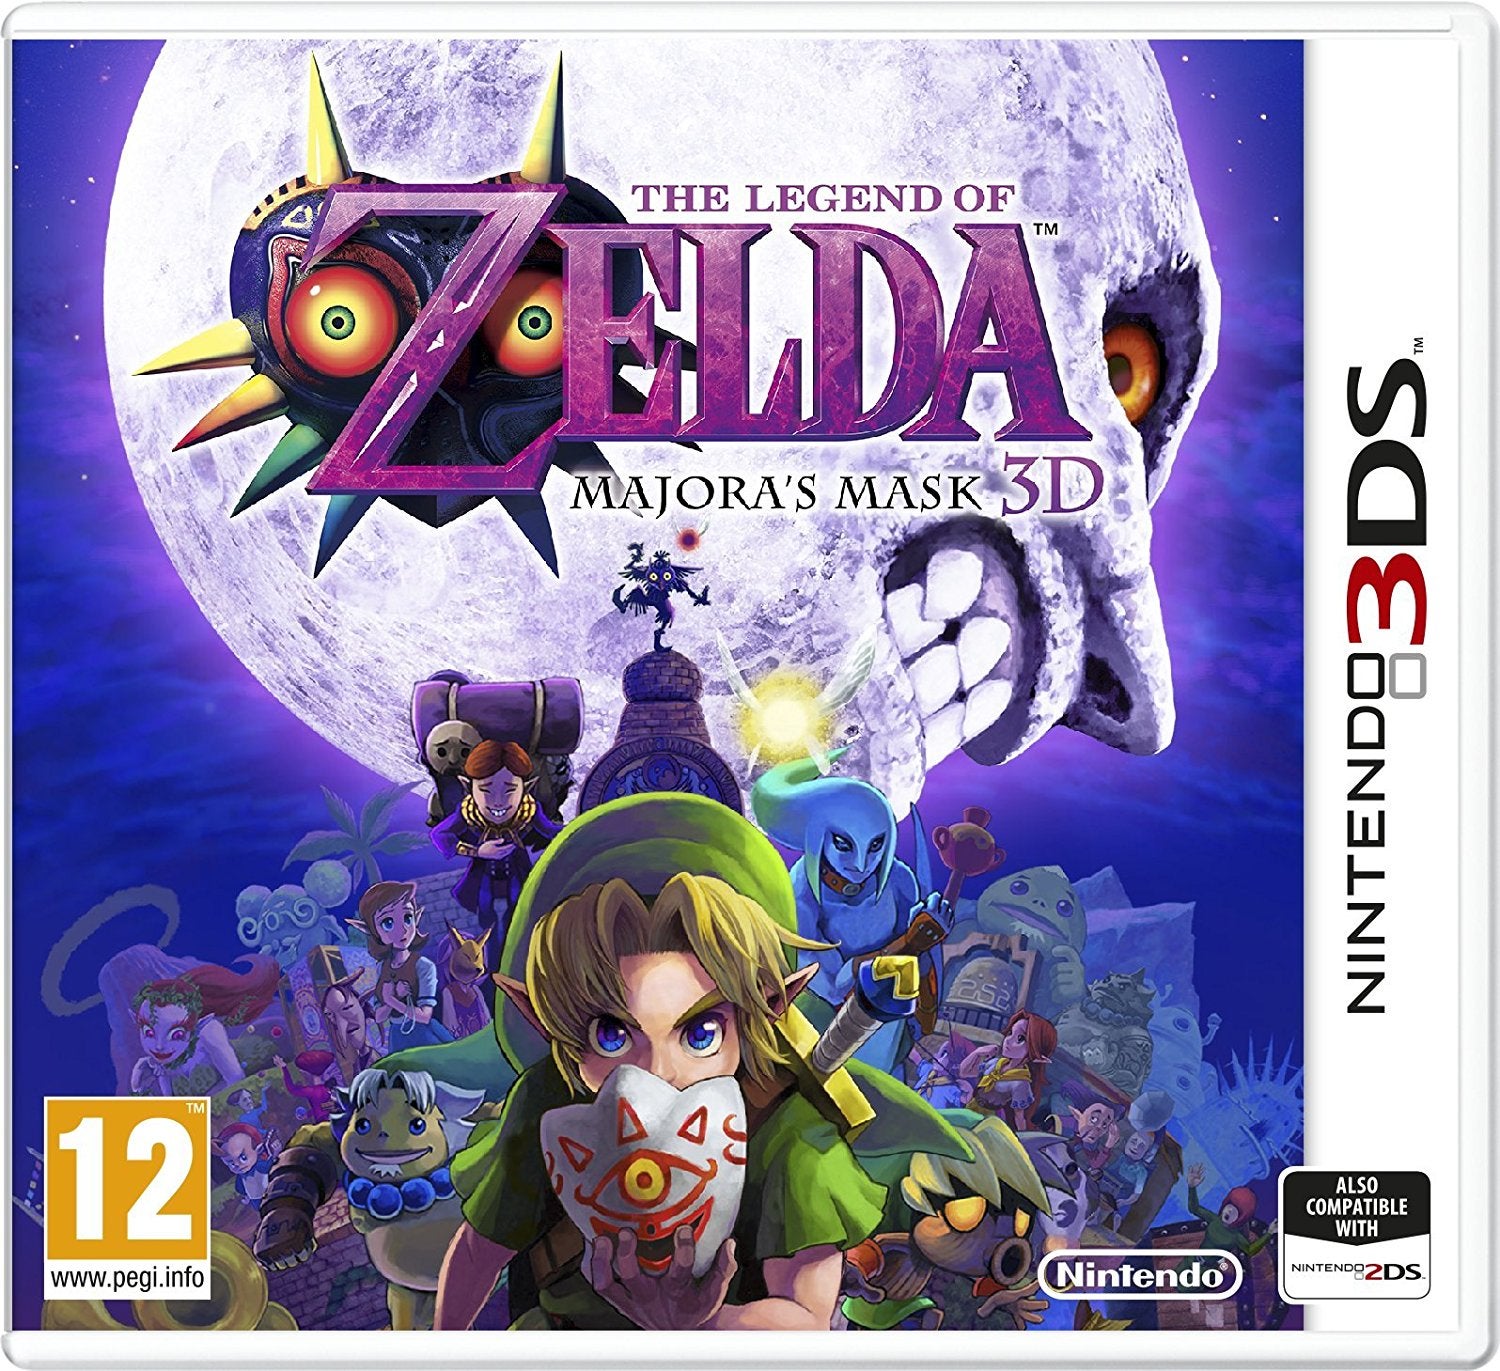 Nintendo 3DS The Legend of Zelda Majoras Mask 3D  Nintendo 3DS Game